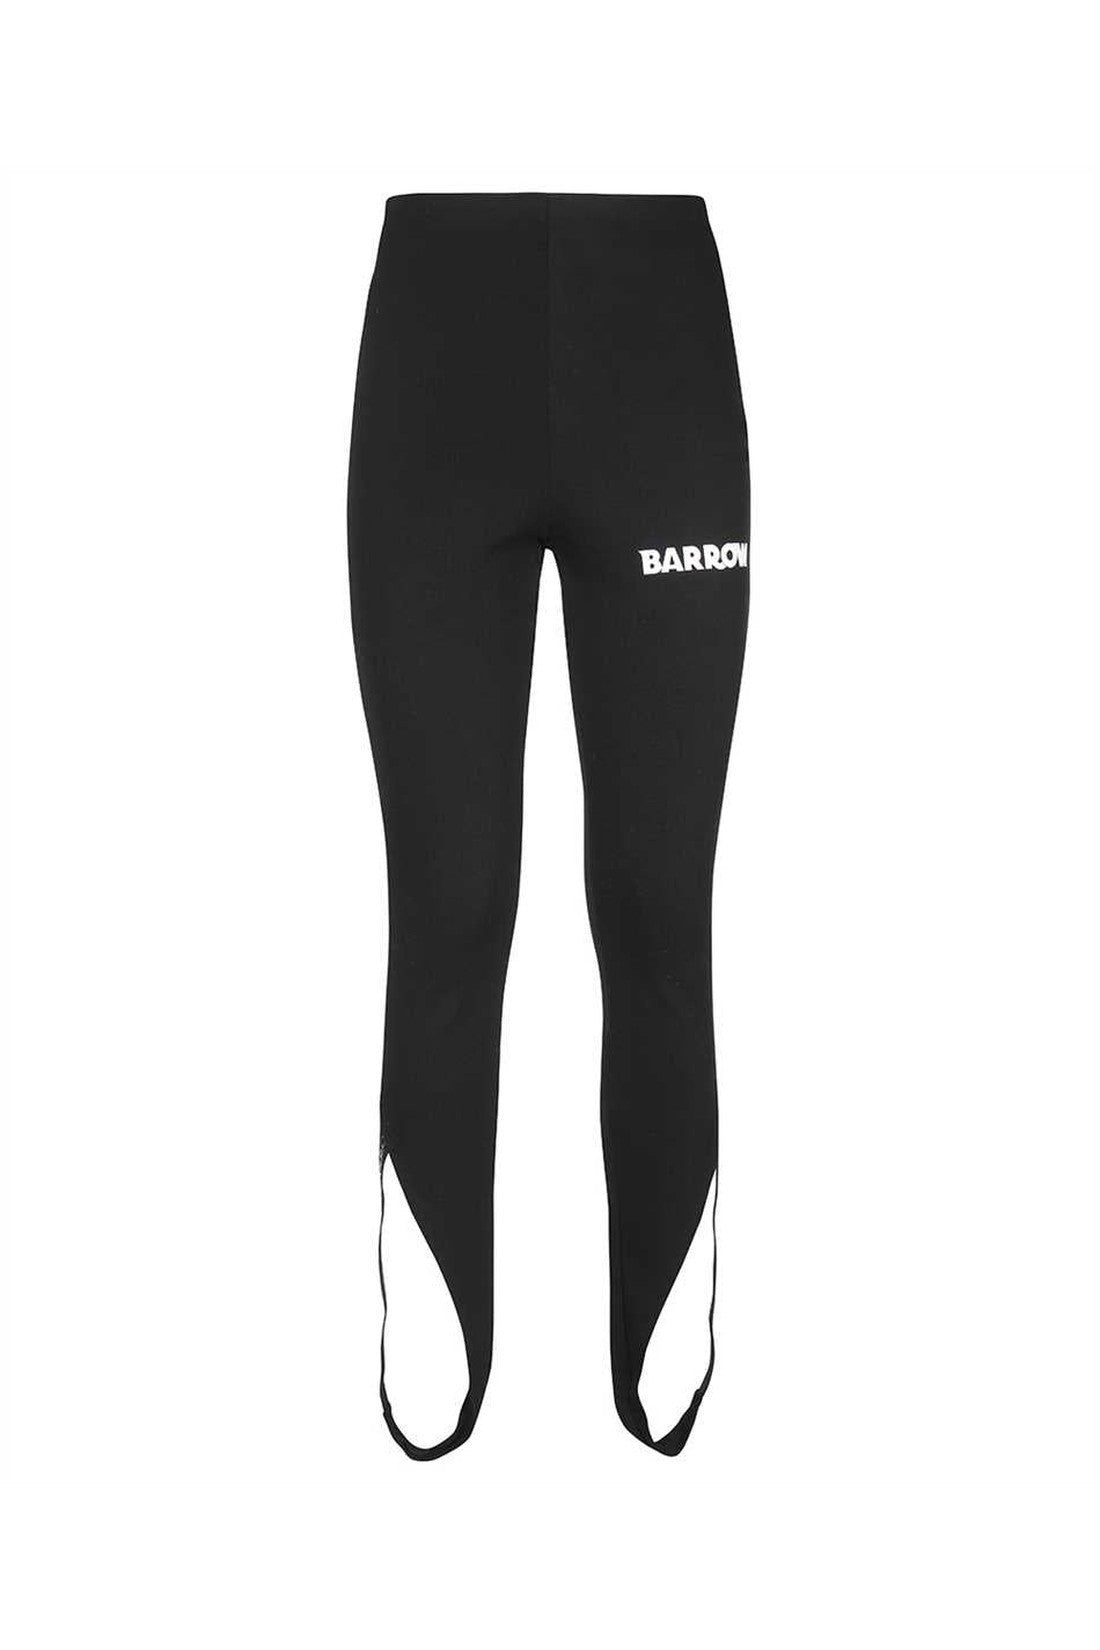 Logo print leggings-Barrow-OUTLET-SALE-M-ARCHIVIST